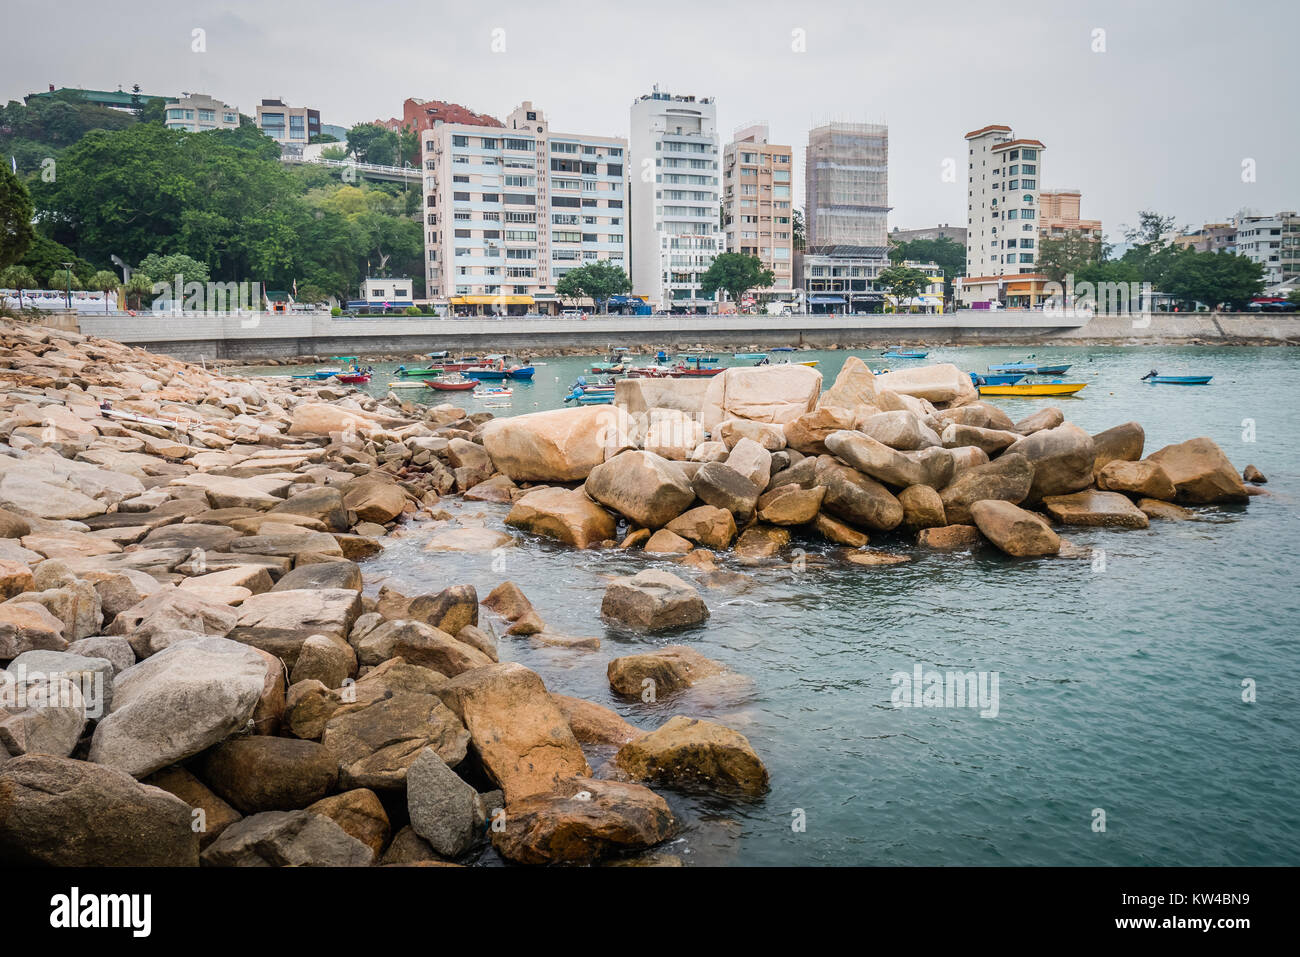 Hong kong stanley è un villaggio sul mare con una rilassata atmosfera popolare con i turisti Foto Stock